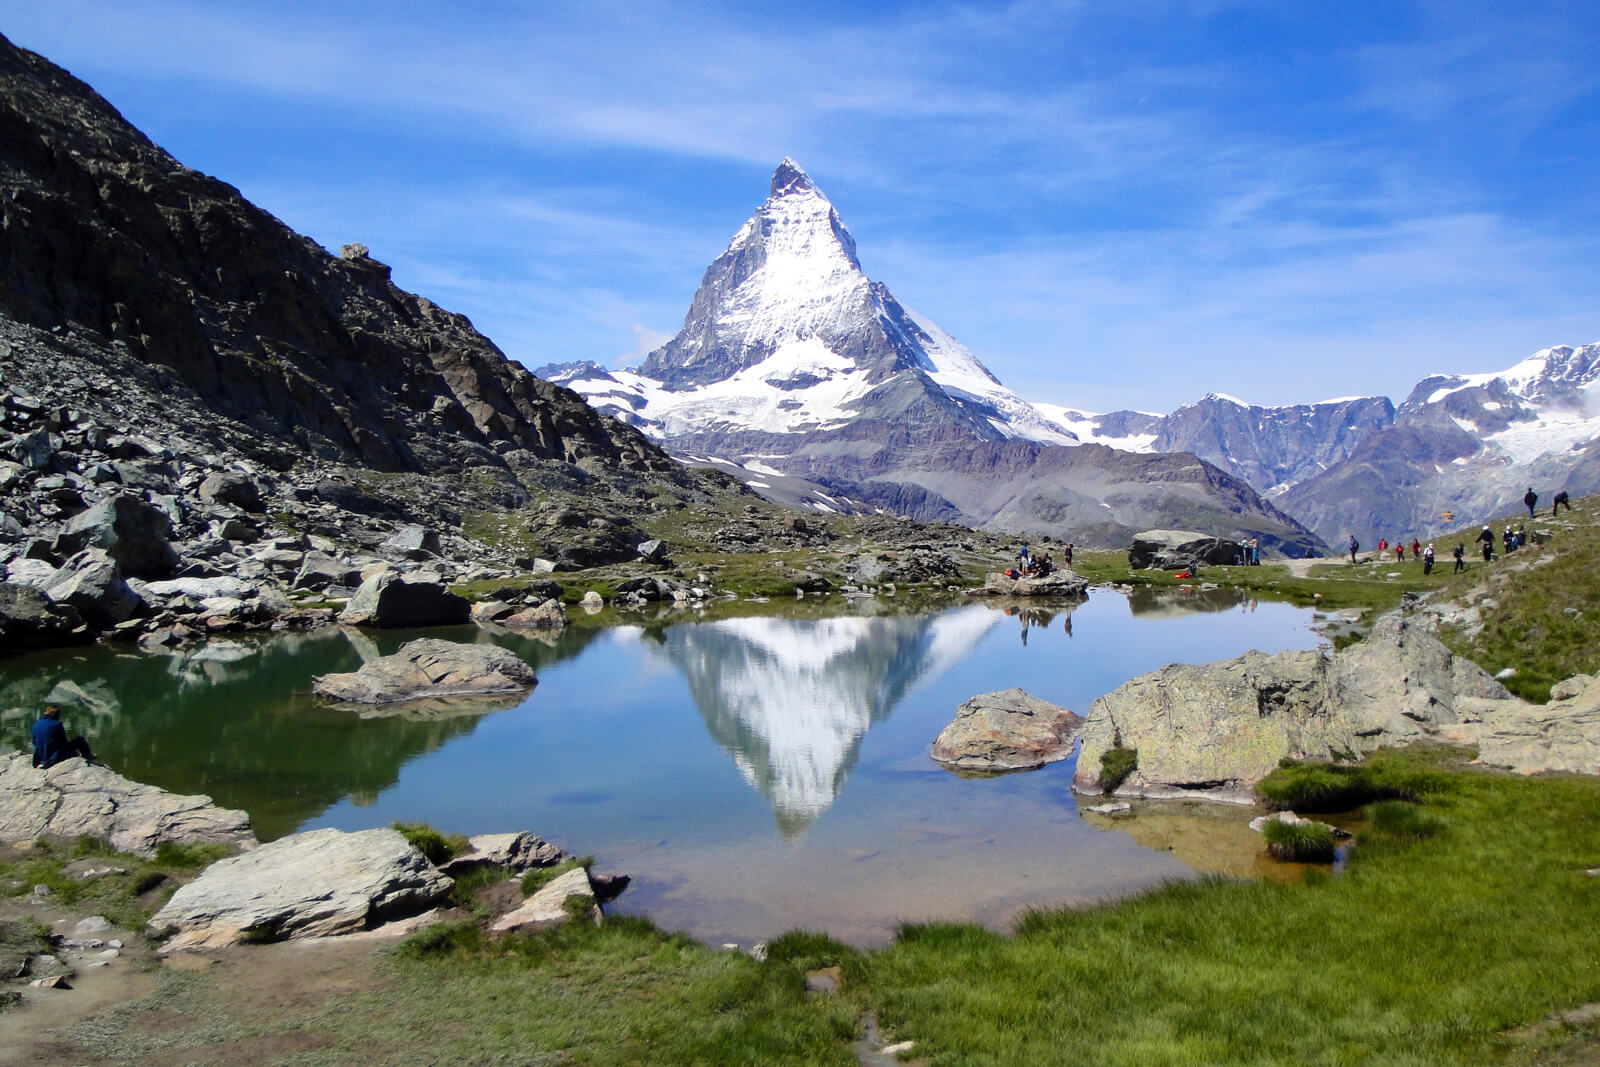 Zermatt Matterhorn Hike